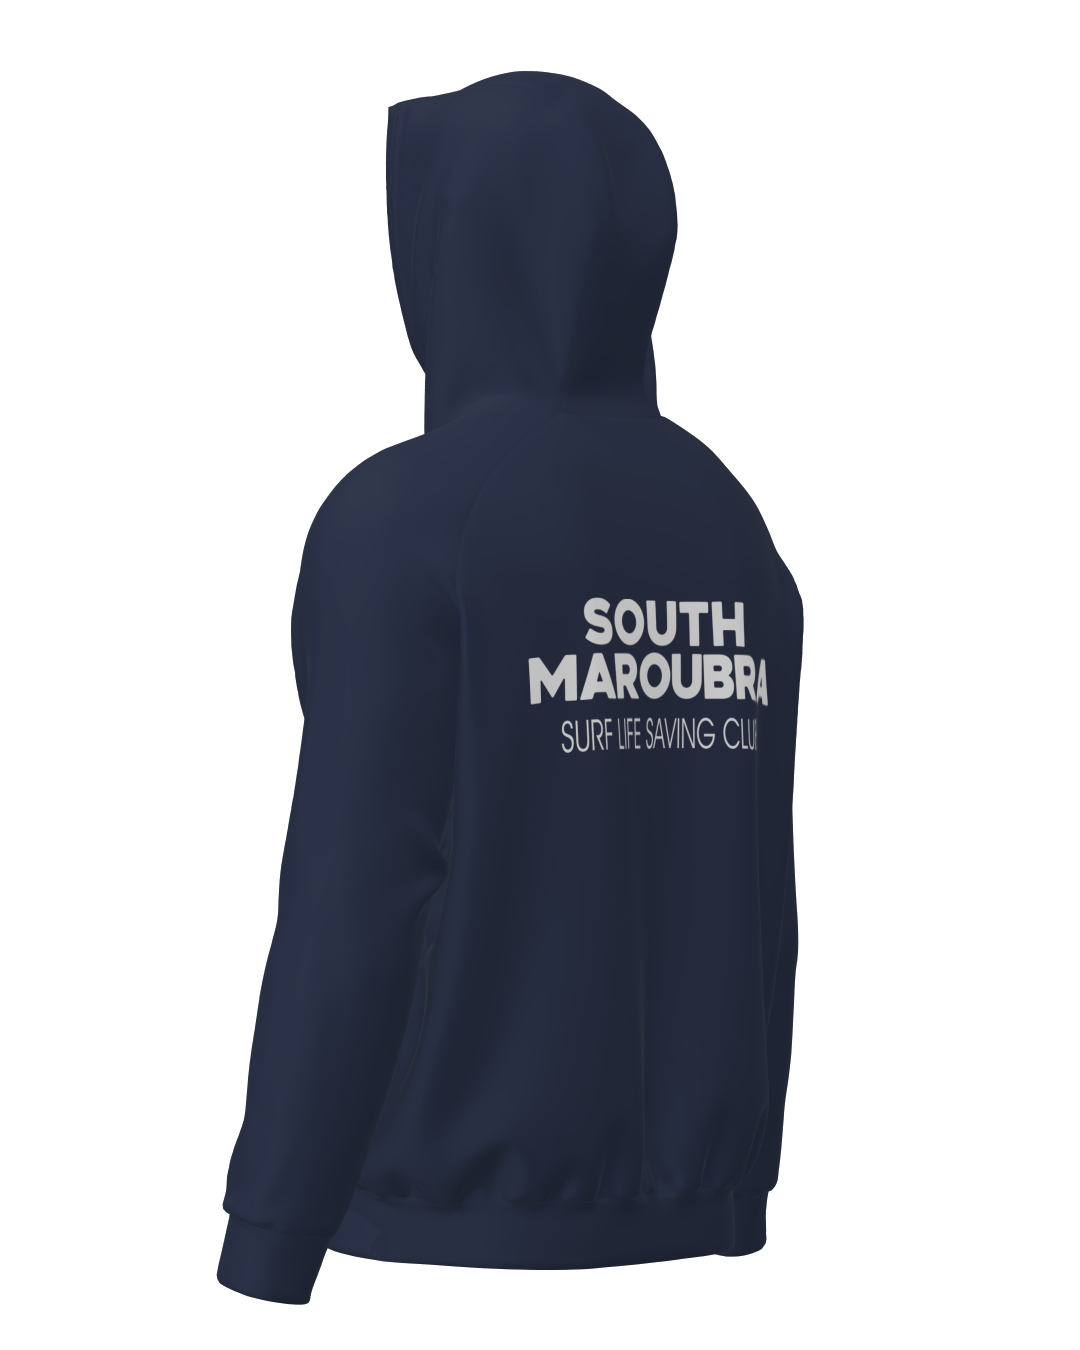 South Maroubra SLSC Cotton Hoodie